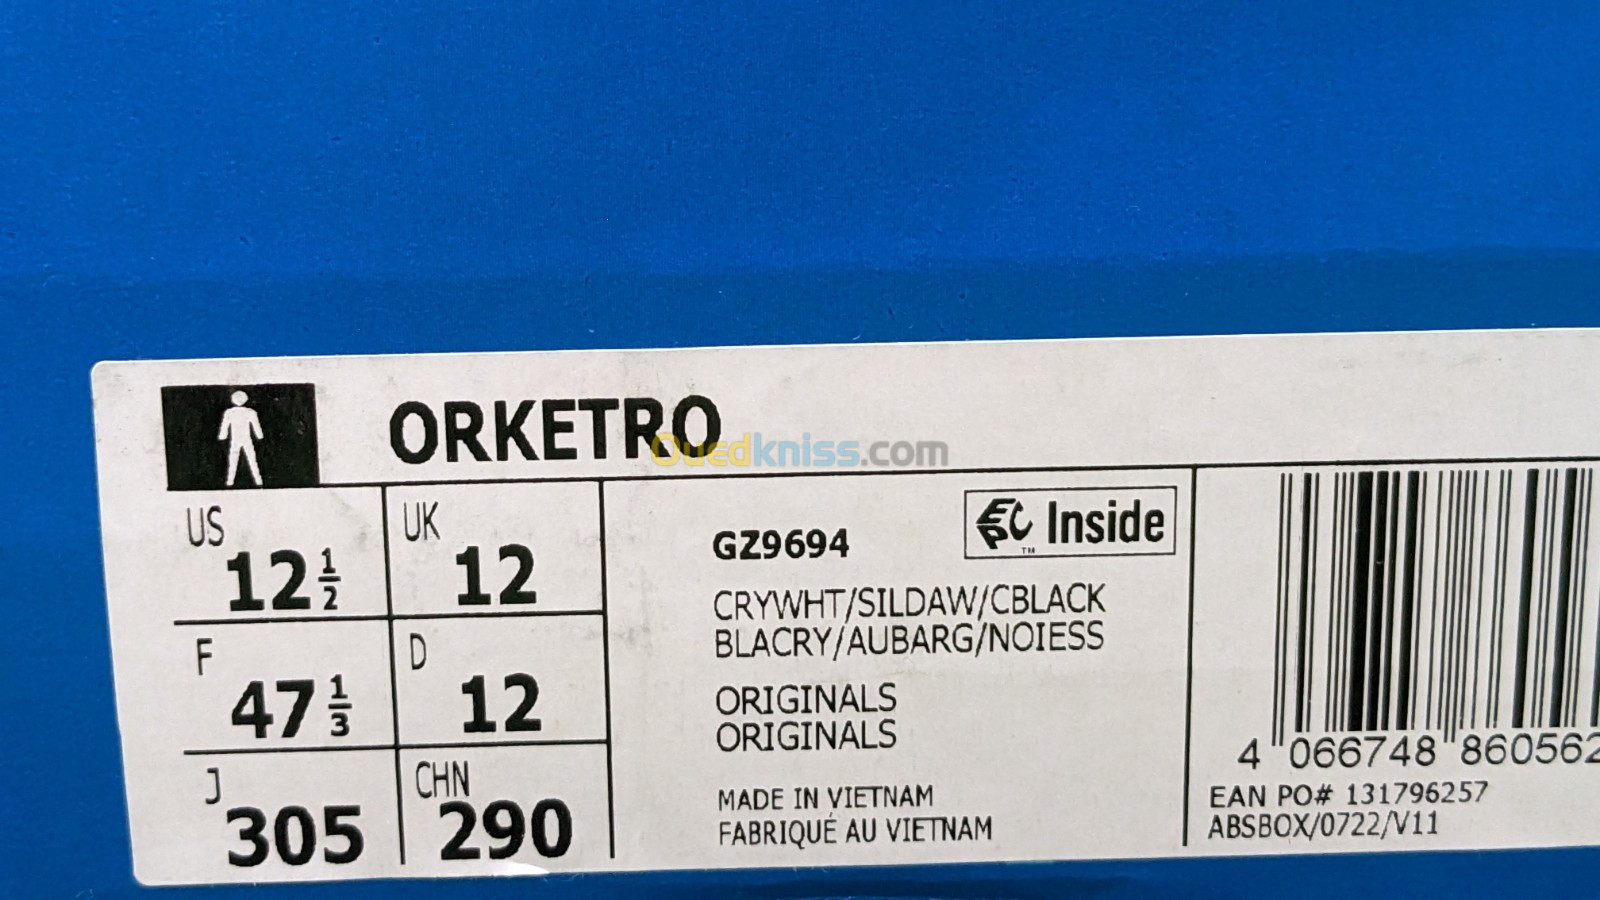 Adidas Orketro -  Original اصلية - Ref GZ9694 -  Pointure 47 1/3 / 30.5 CM